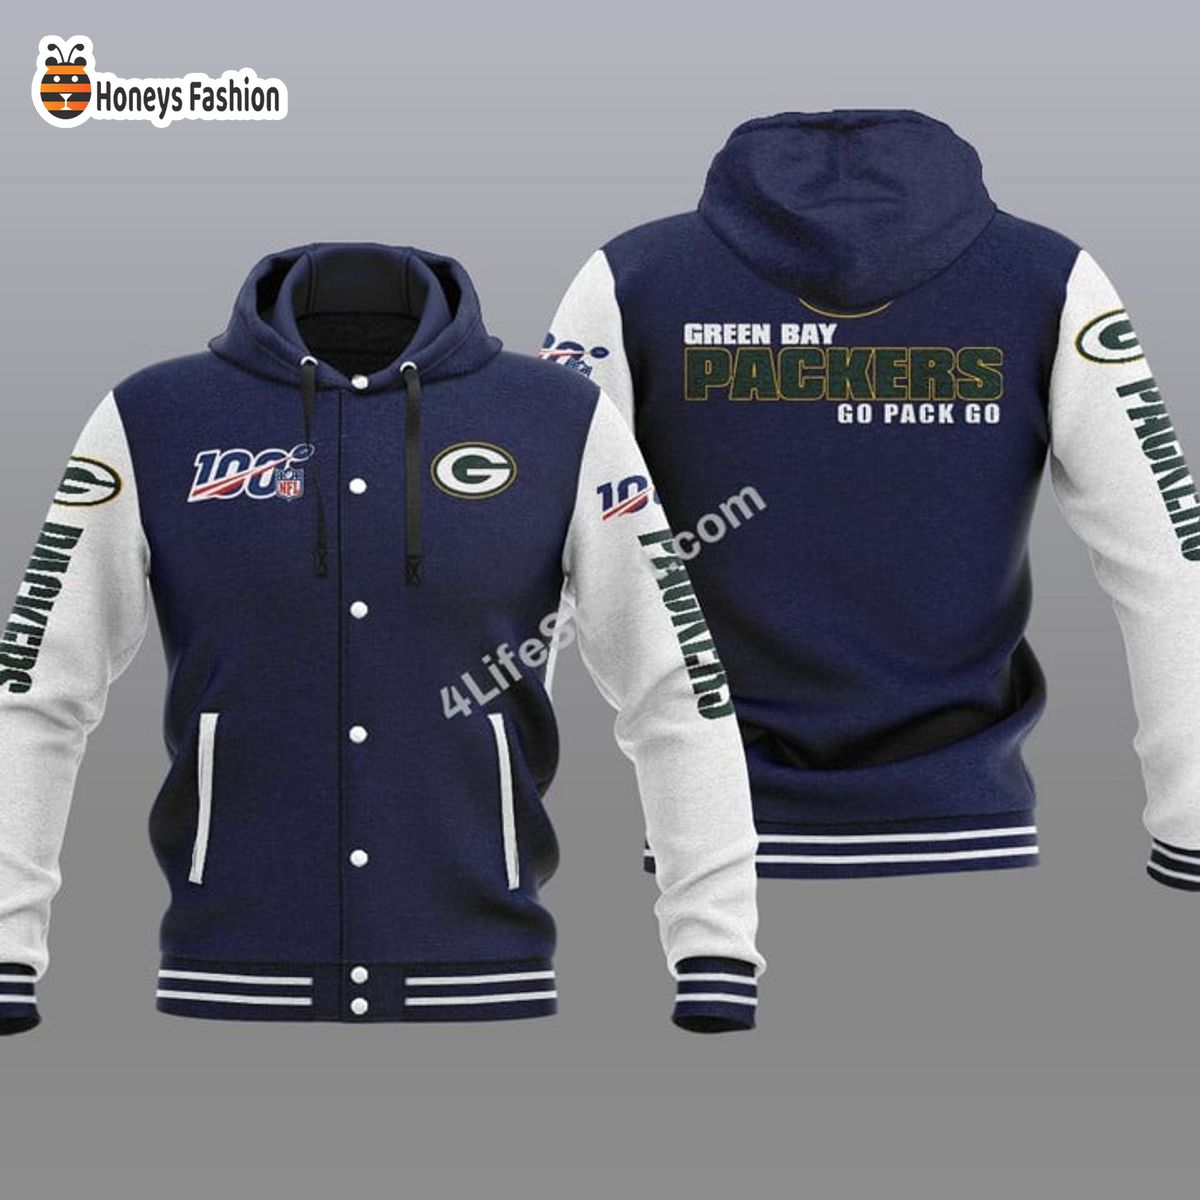 Green Bay Packers 100th Anniversary Season Hooded Varsity Jacket